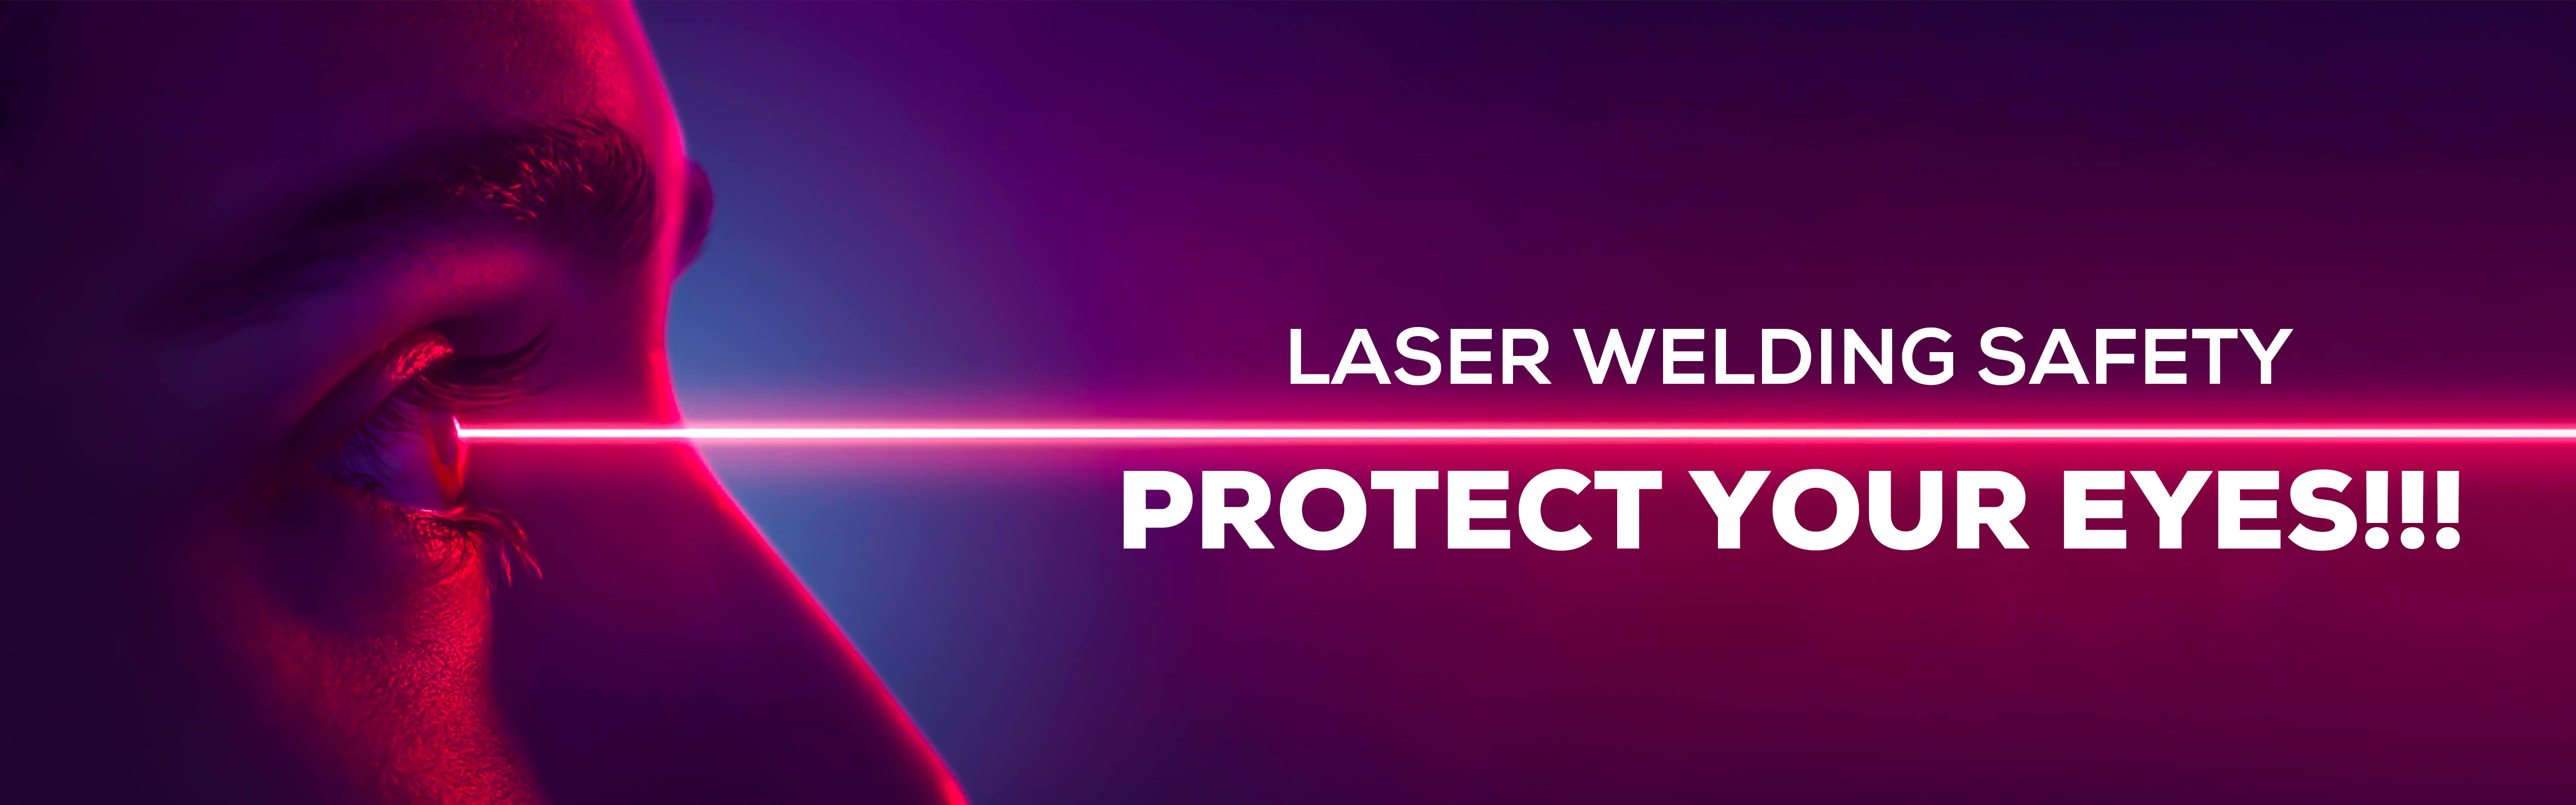 laser welding safety